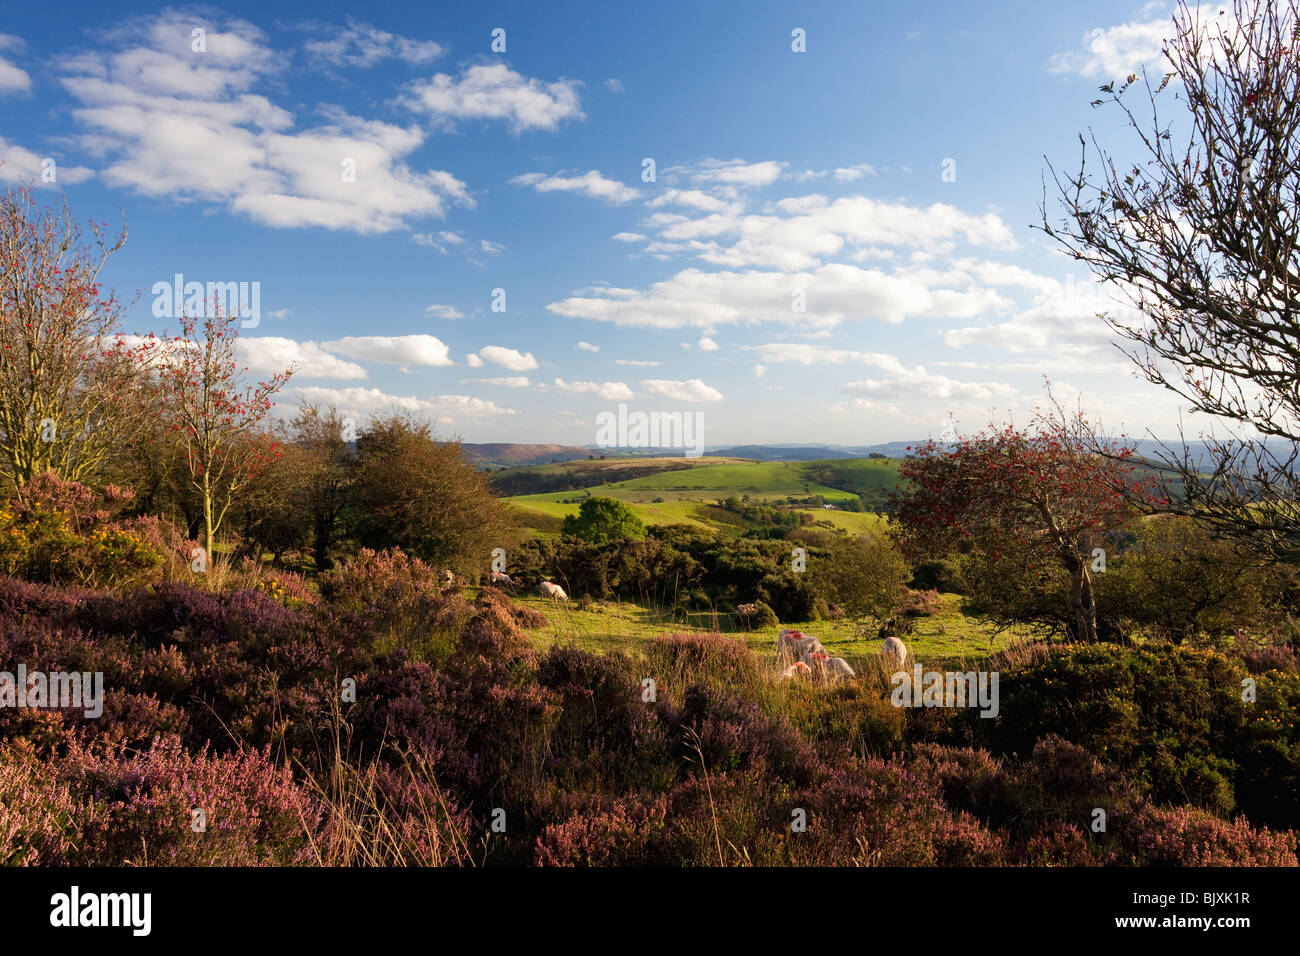 Schafbeweidung Stiperstones lila Heidekraut Sommer Tag blauer Himmel Sonnenschein in der Nähe von Bischöfen Burg Shropshire Grenzen England Stockfoto